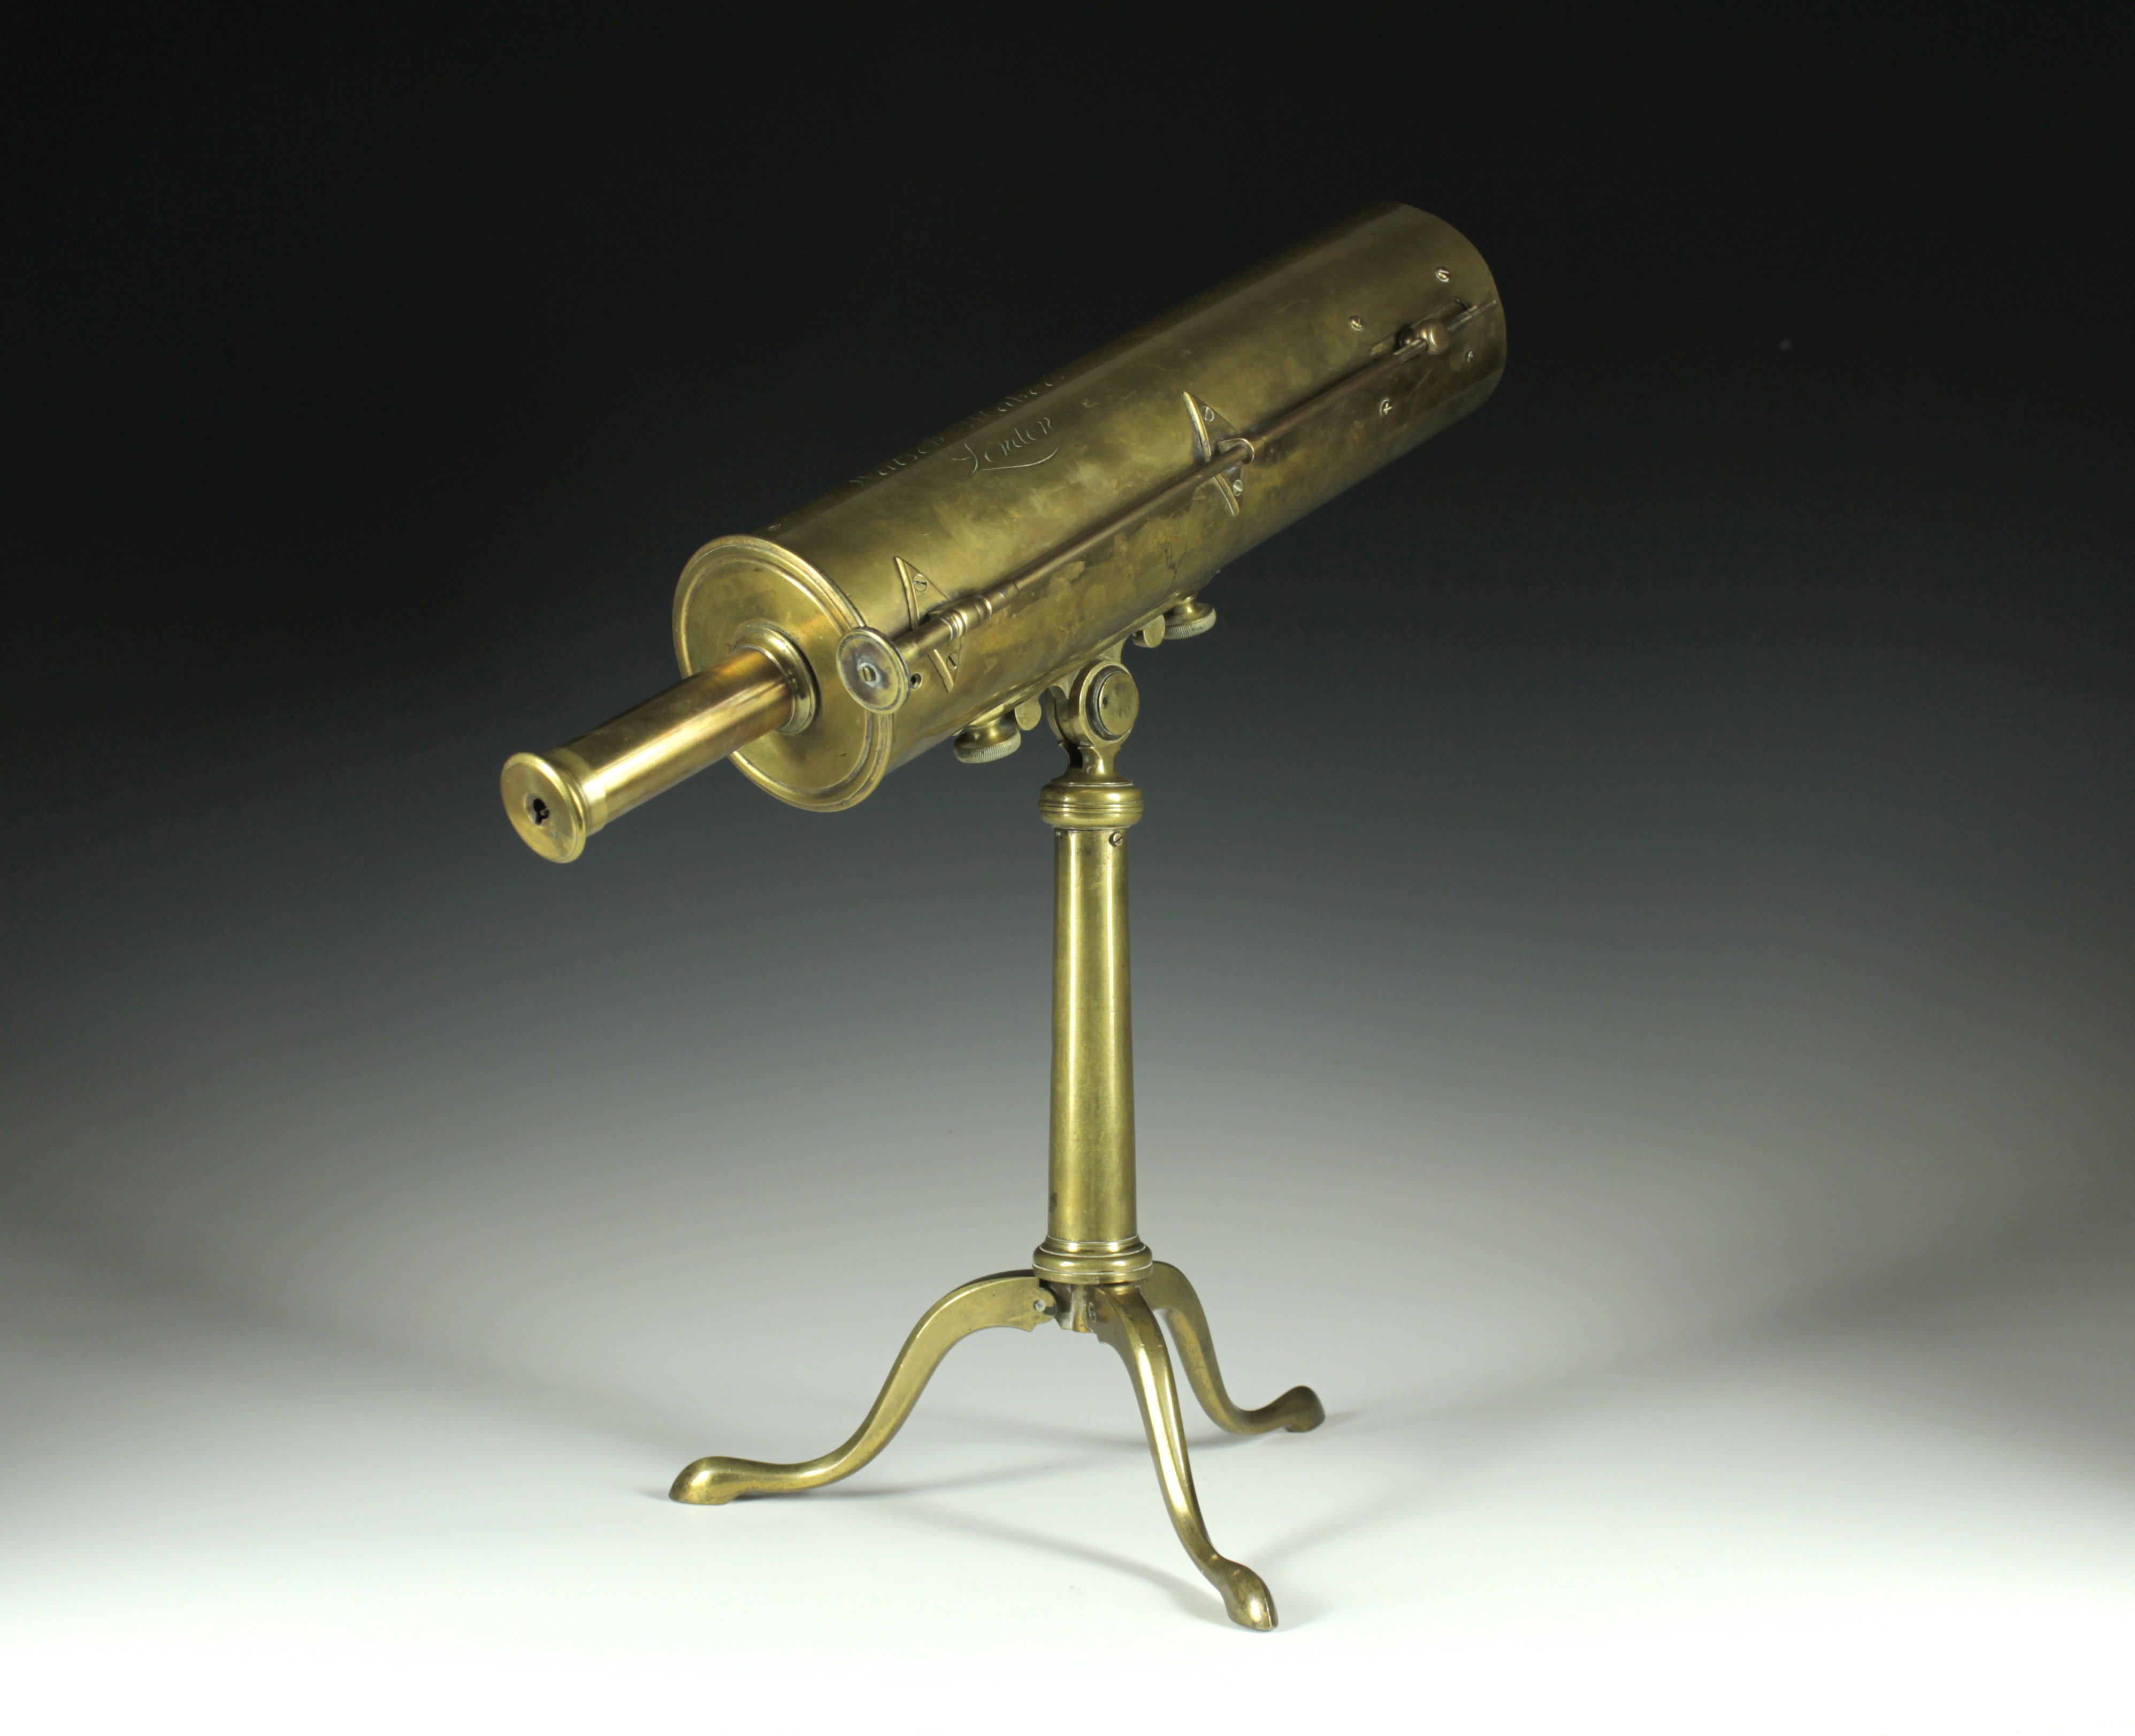 Spiegelteleskop